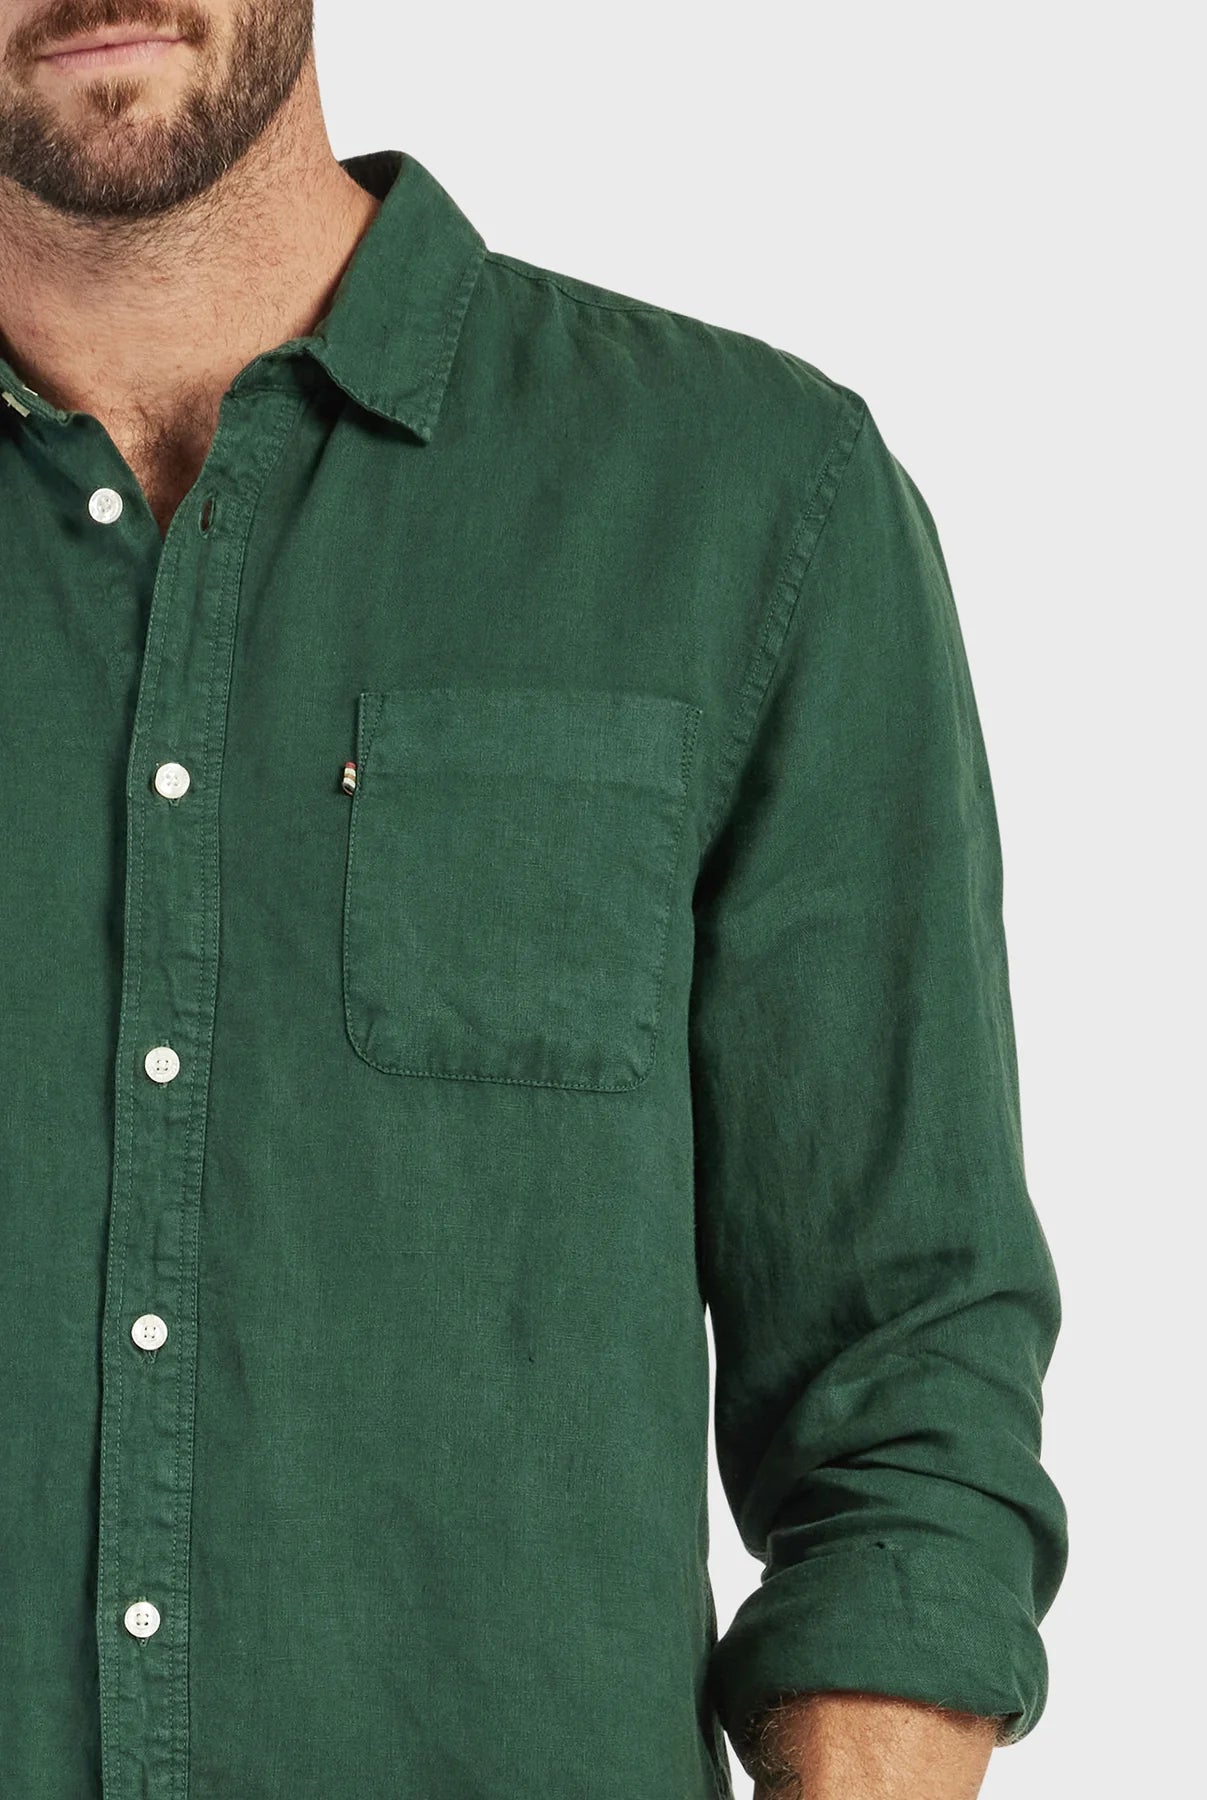 Hampton Linen Shirt in Sherwood Green